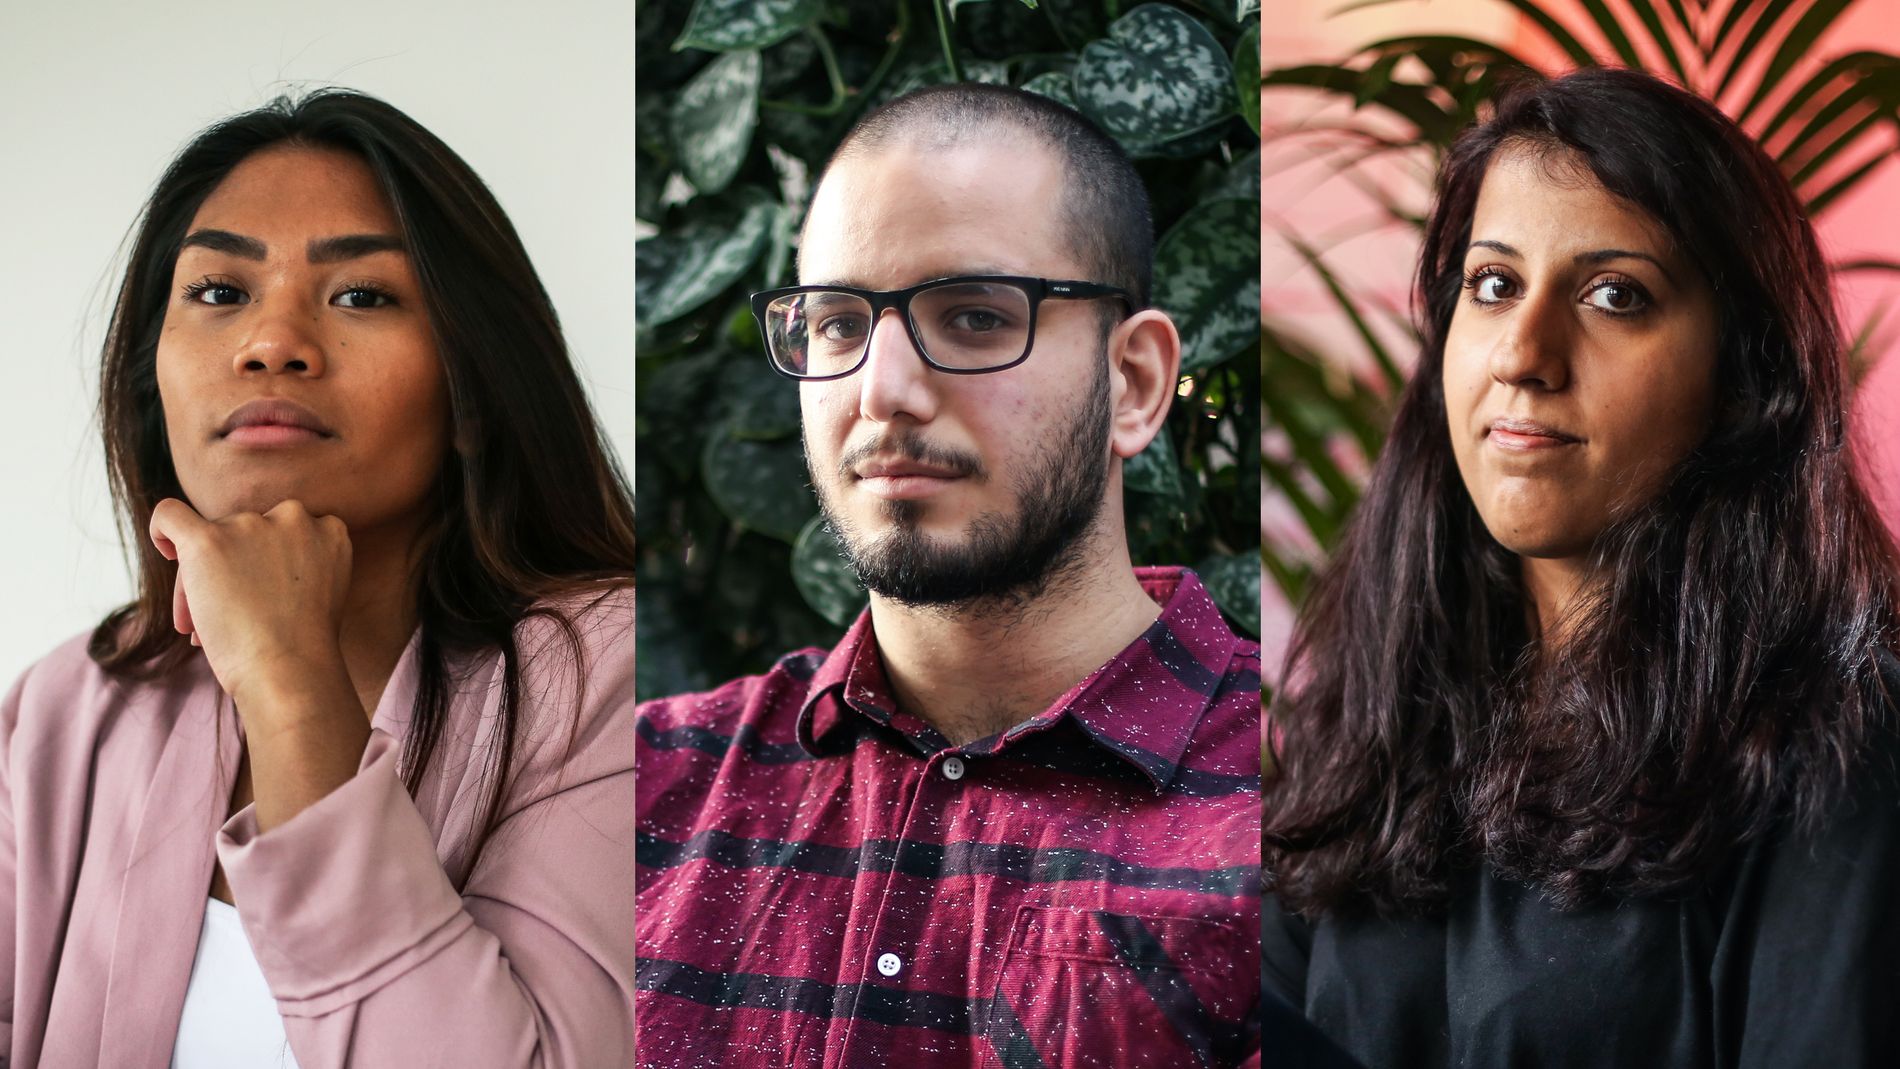 Krizza Elisabeth Vandli (f.v.), Karar Al-Mafraje og Tooba Khokhar (t.h) opplever fordommer og diskriminering. Nå ønsker de å ta et oppgjør mot rasistiske holdninger.